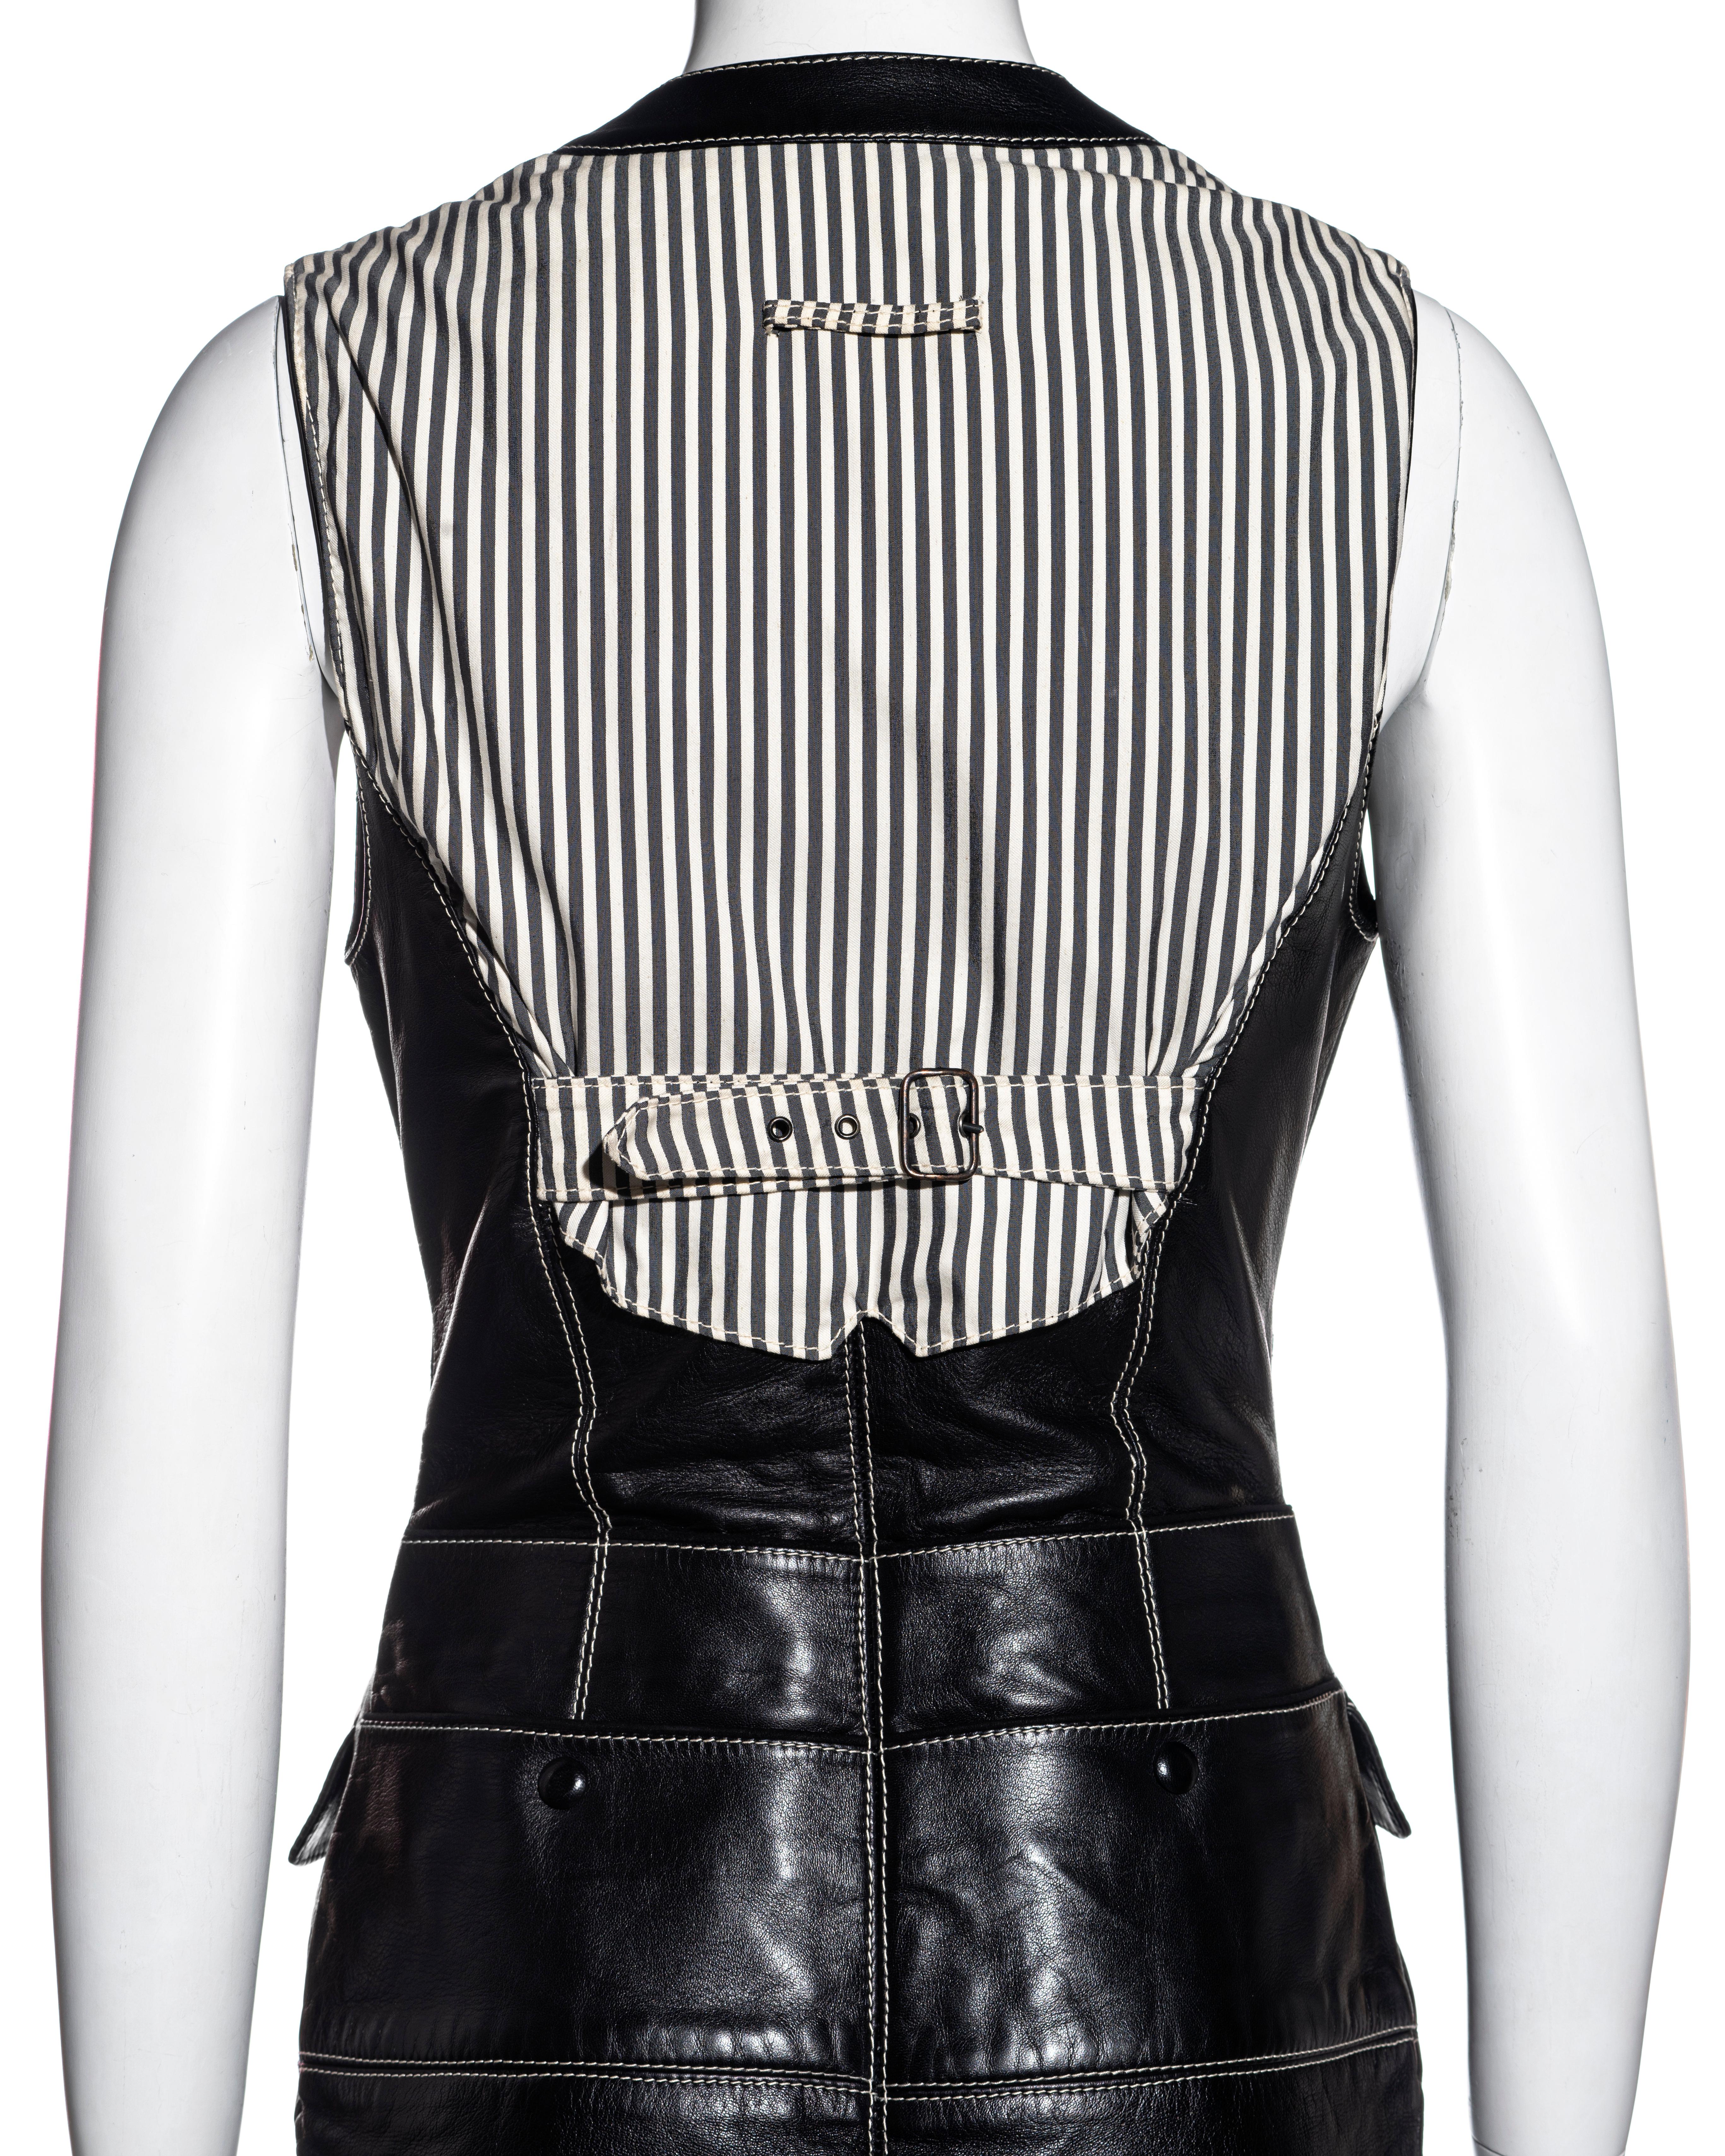 Jean Paul Gaultier black leather waistcoat dress, fw 1992 5